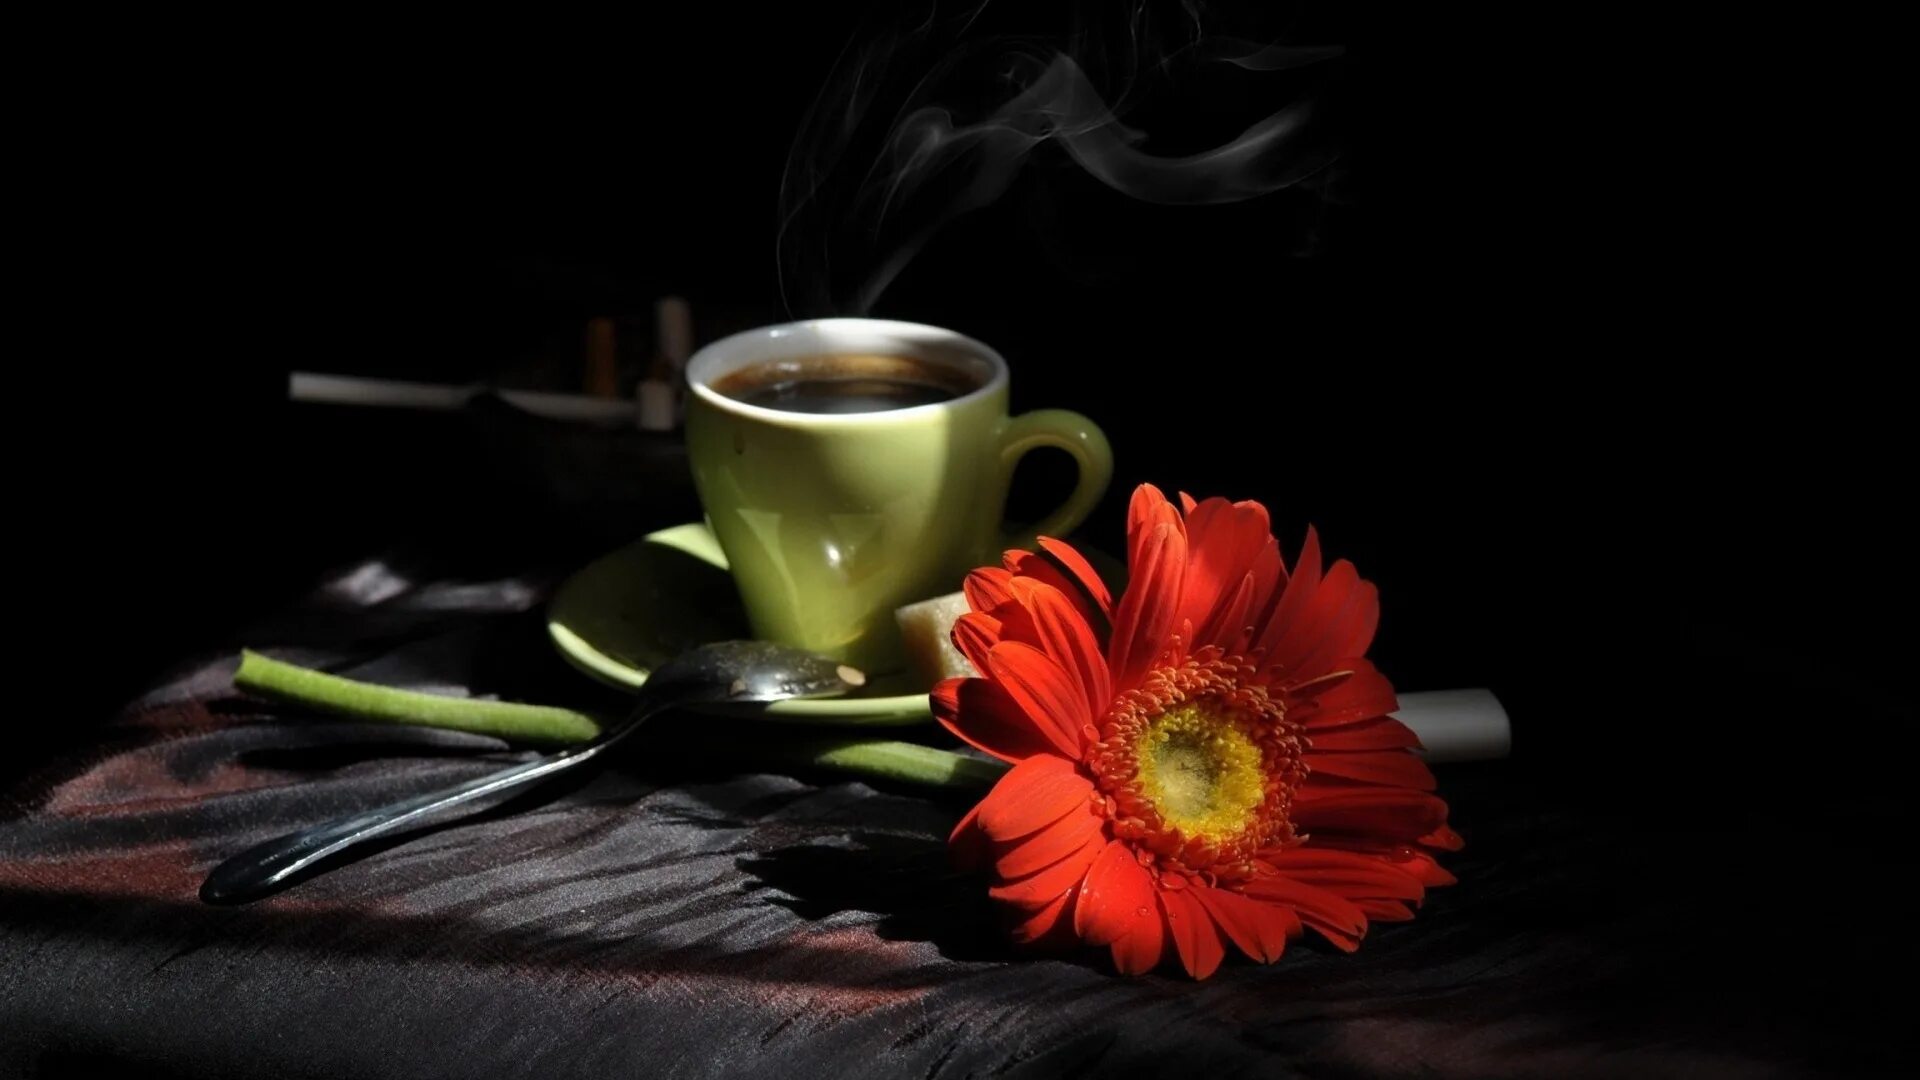 Хочется всем пожелать радости. Желаю вам маленьких радостей чашку ароматного кофе. Я хочу пожелать вам радости. Пожелания приятных мелочей. Желаю чашечку ароматного кофе.